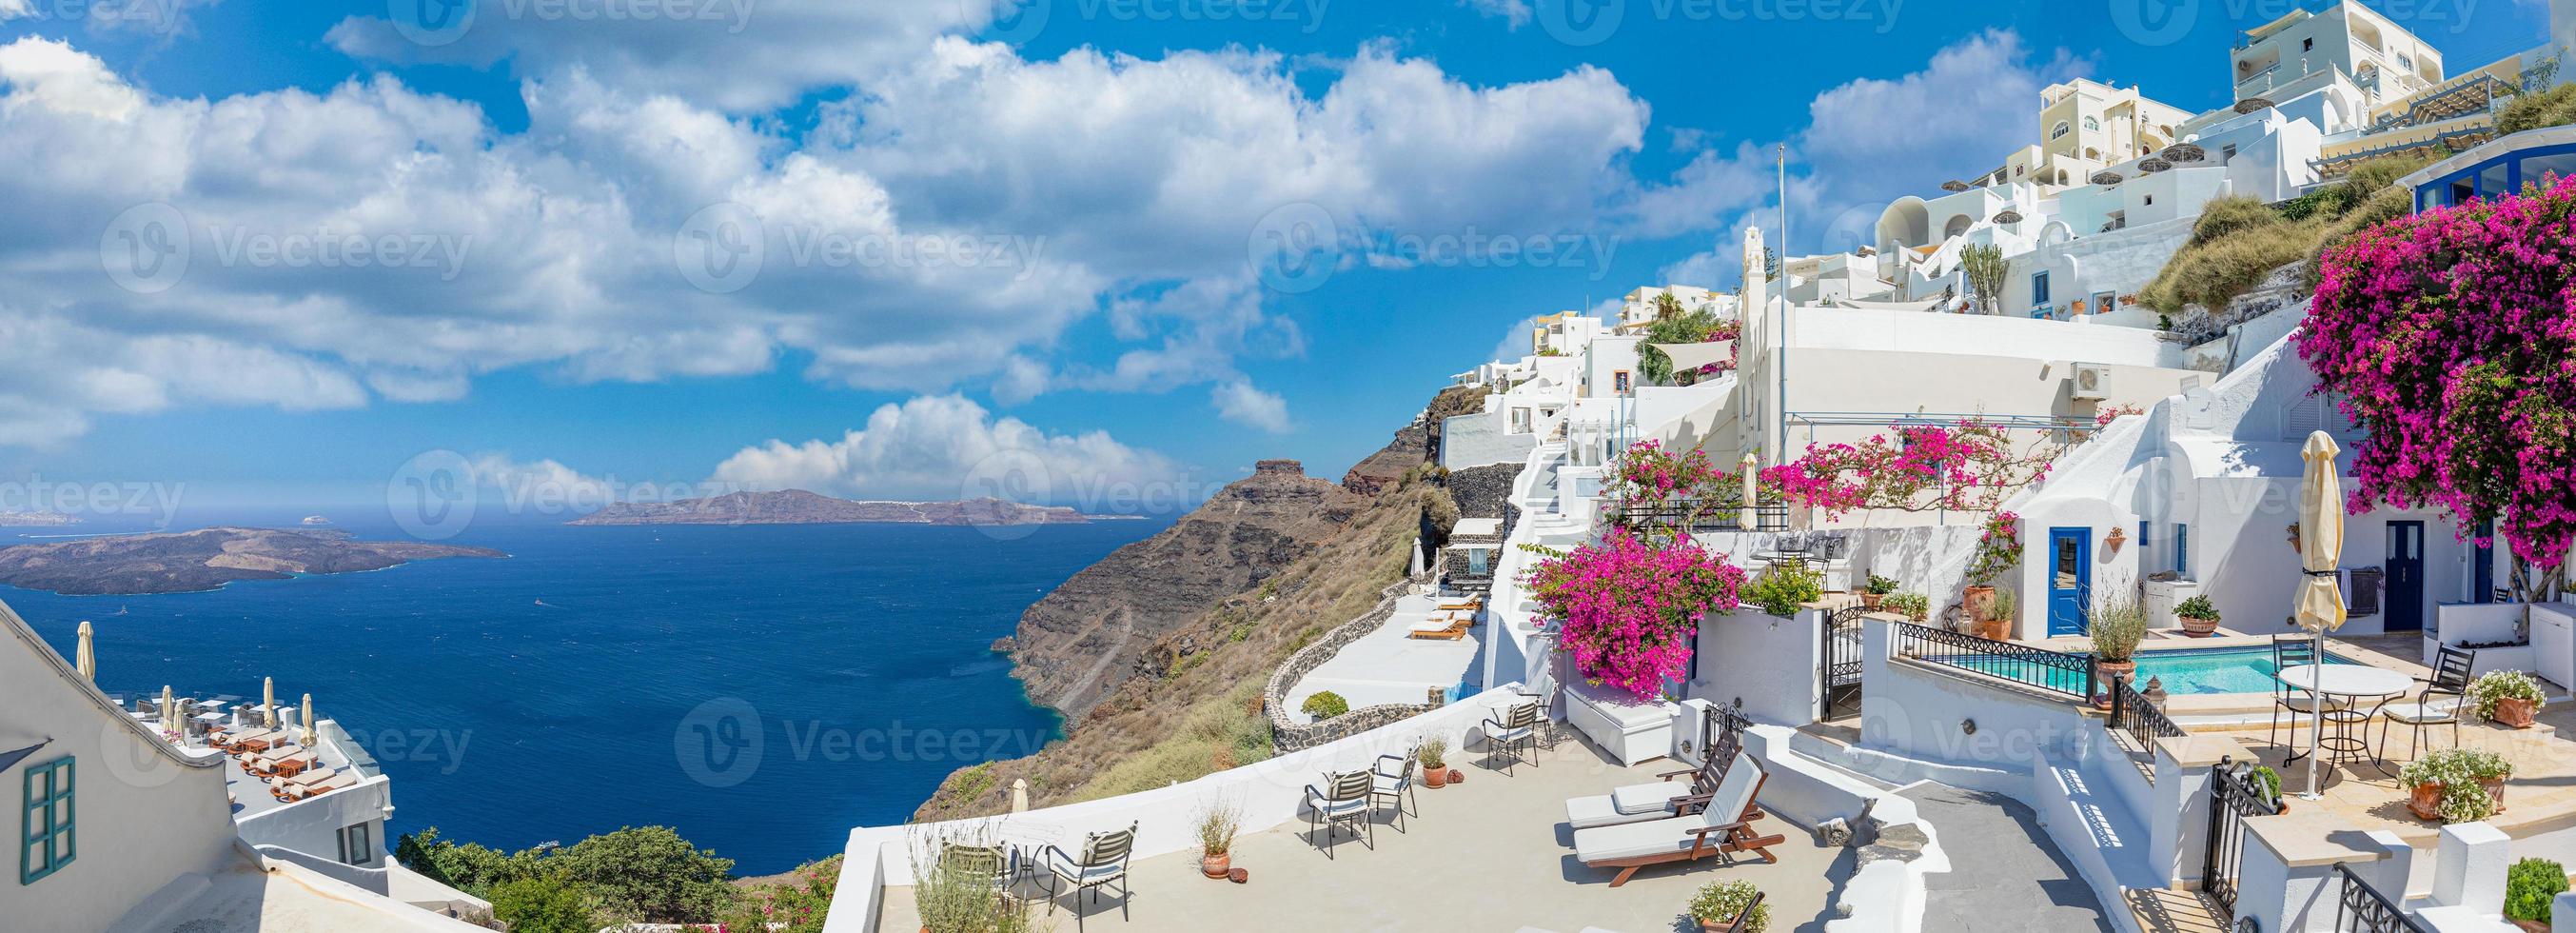 Oia stad på ön Santorini, Grekland. traditionella berömda vita blå hus med blommor under soligt väder över kalderan, Egeiska havet. vackert sommarlandskap, havsutsikt, lyxresor semester foto